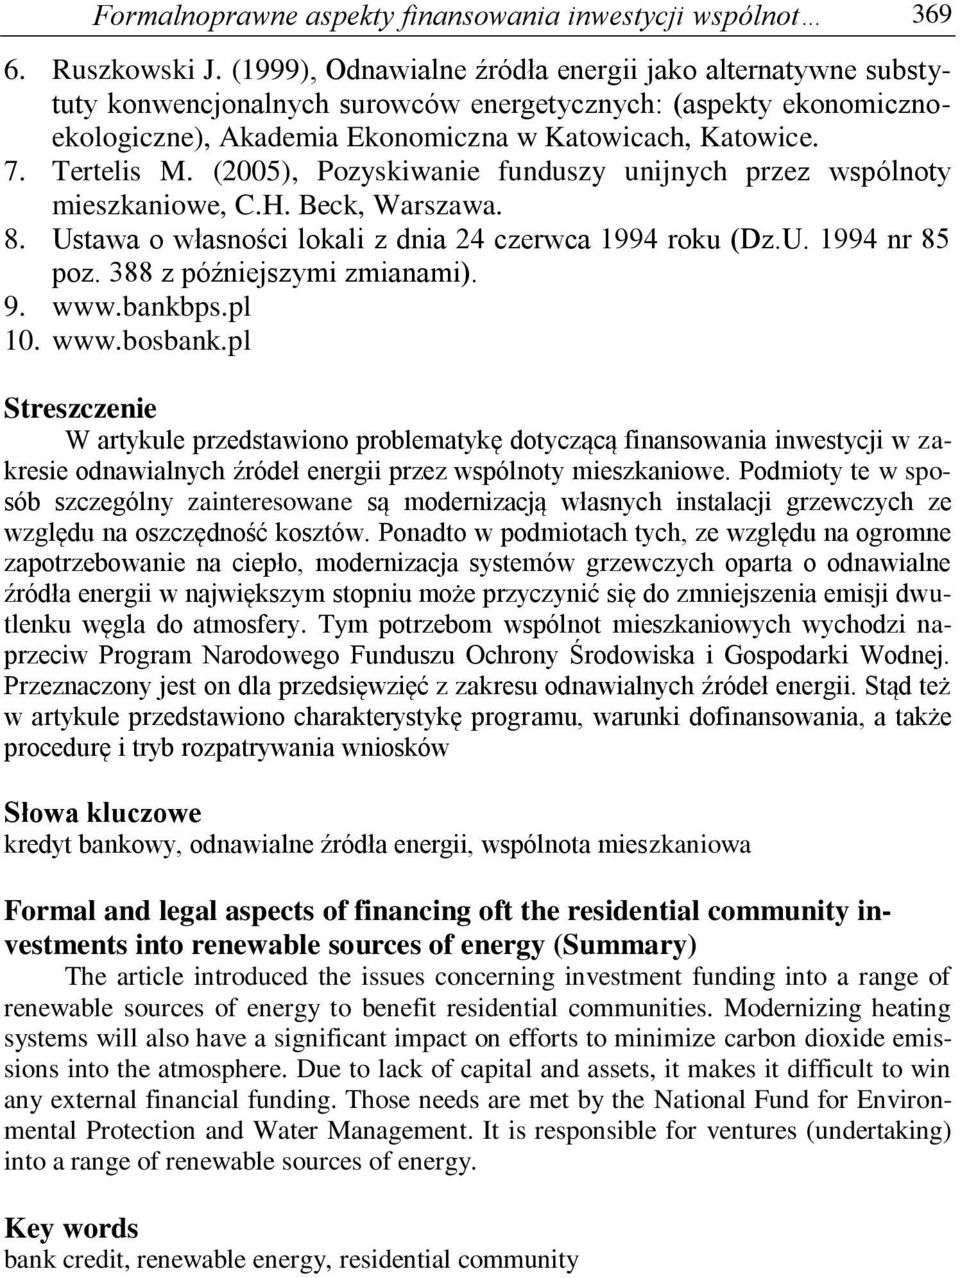 (2005), Pozyskiwanie funduszy unijnych przez wspólnoty mieszkaniowe, C.H. Beck, Warszawa. 8. Ustawa o własności lokali z dnia 24 czerwca 1994 roku (Dz.U. 1994 nr 85 poz. 388 z późniejszymi zmianami).